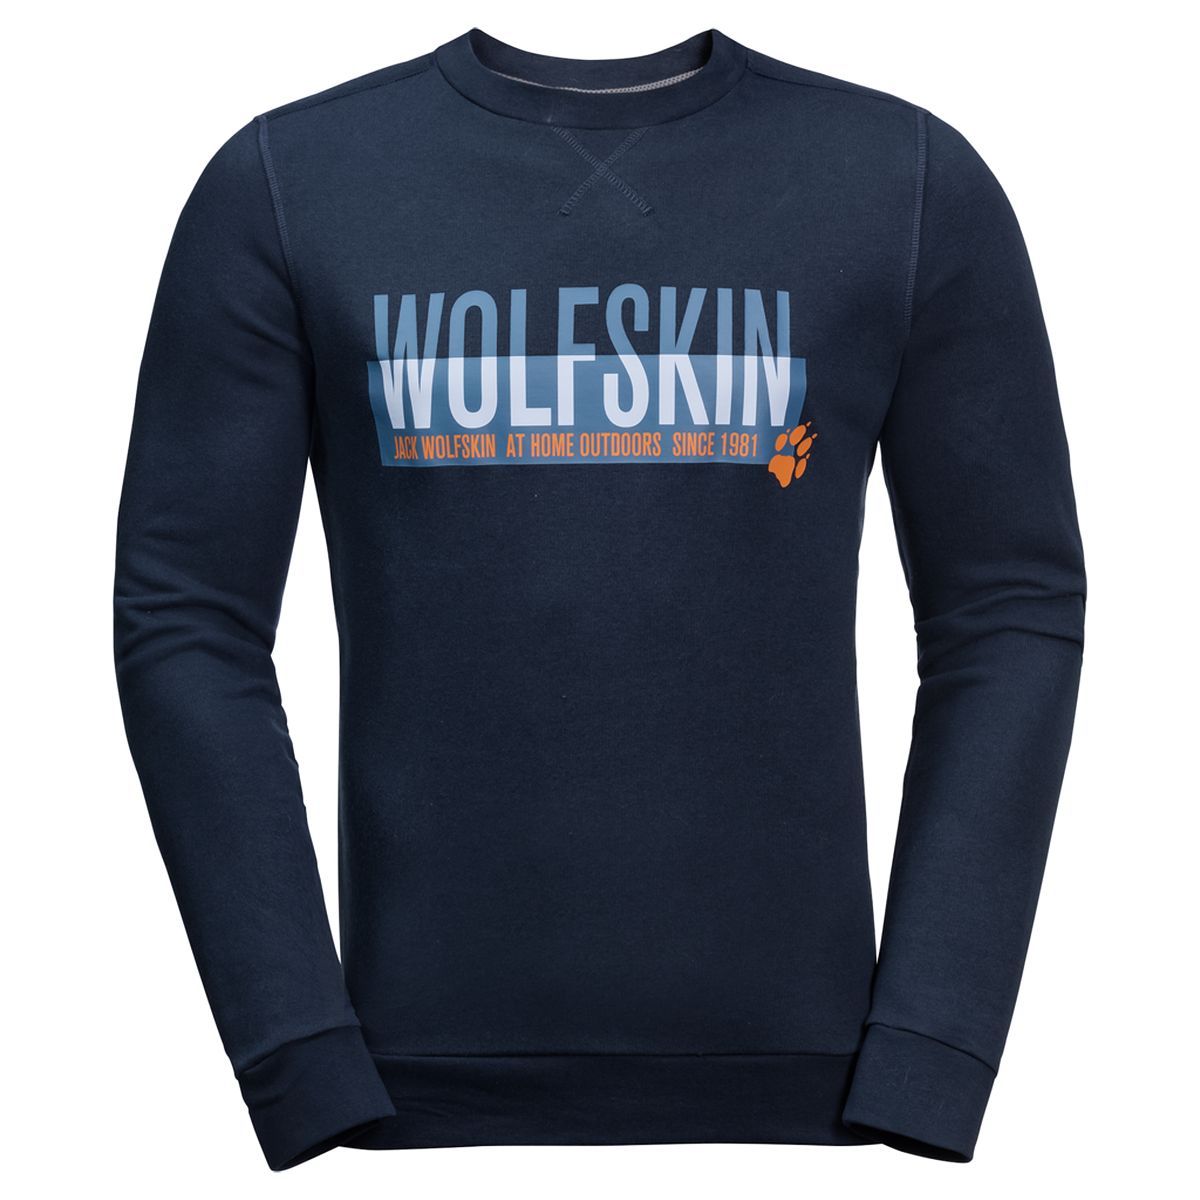   Jack Wolfskin Slogan Sweatshirt M, : -. 1707391-1010.  XL (52)